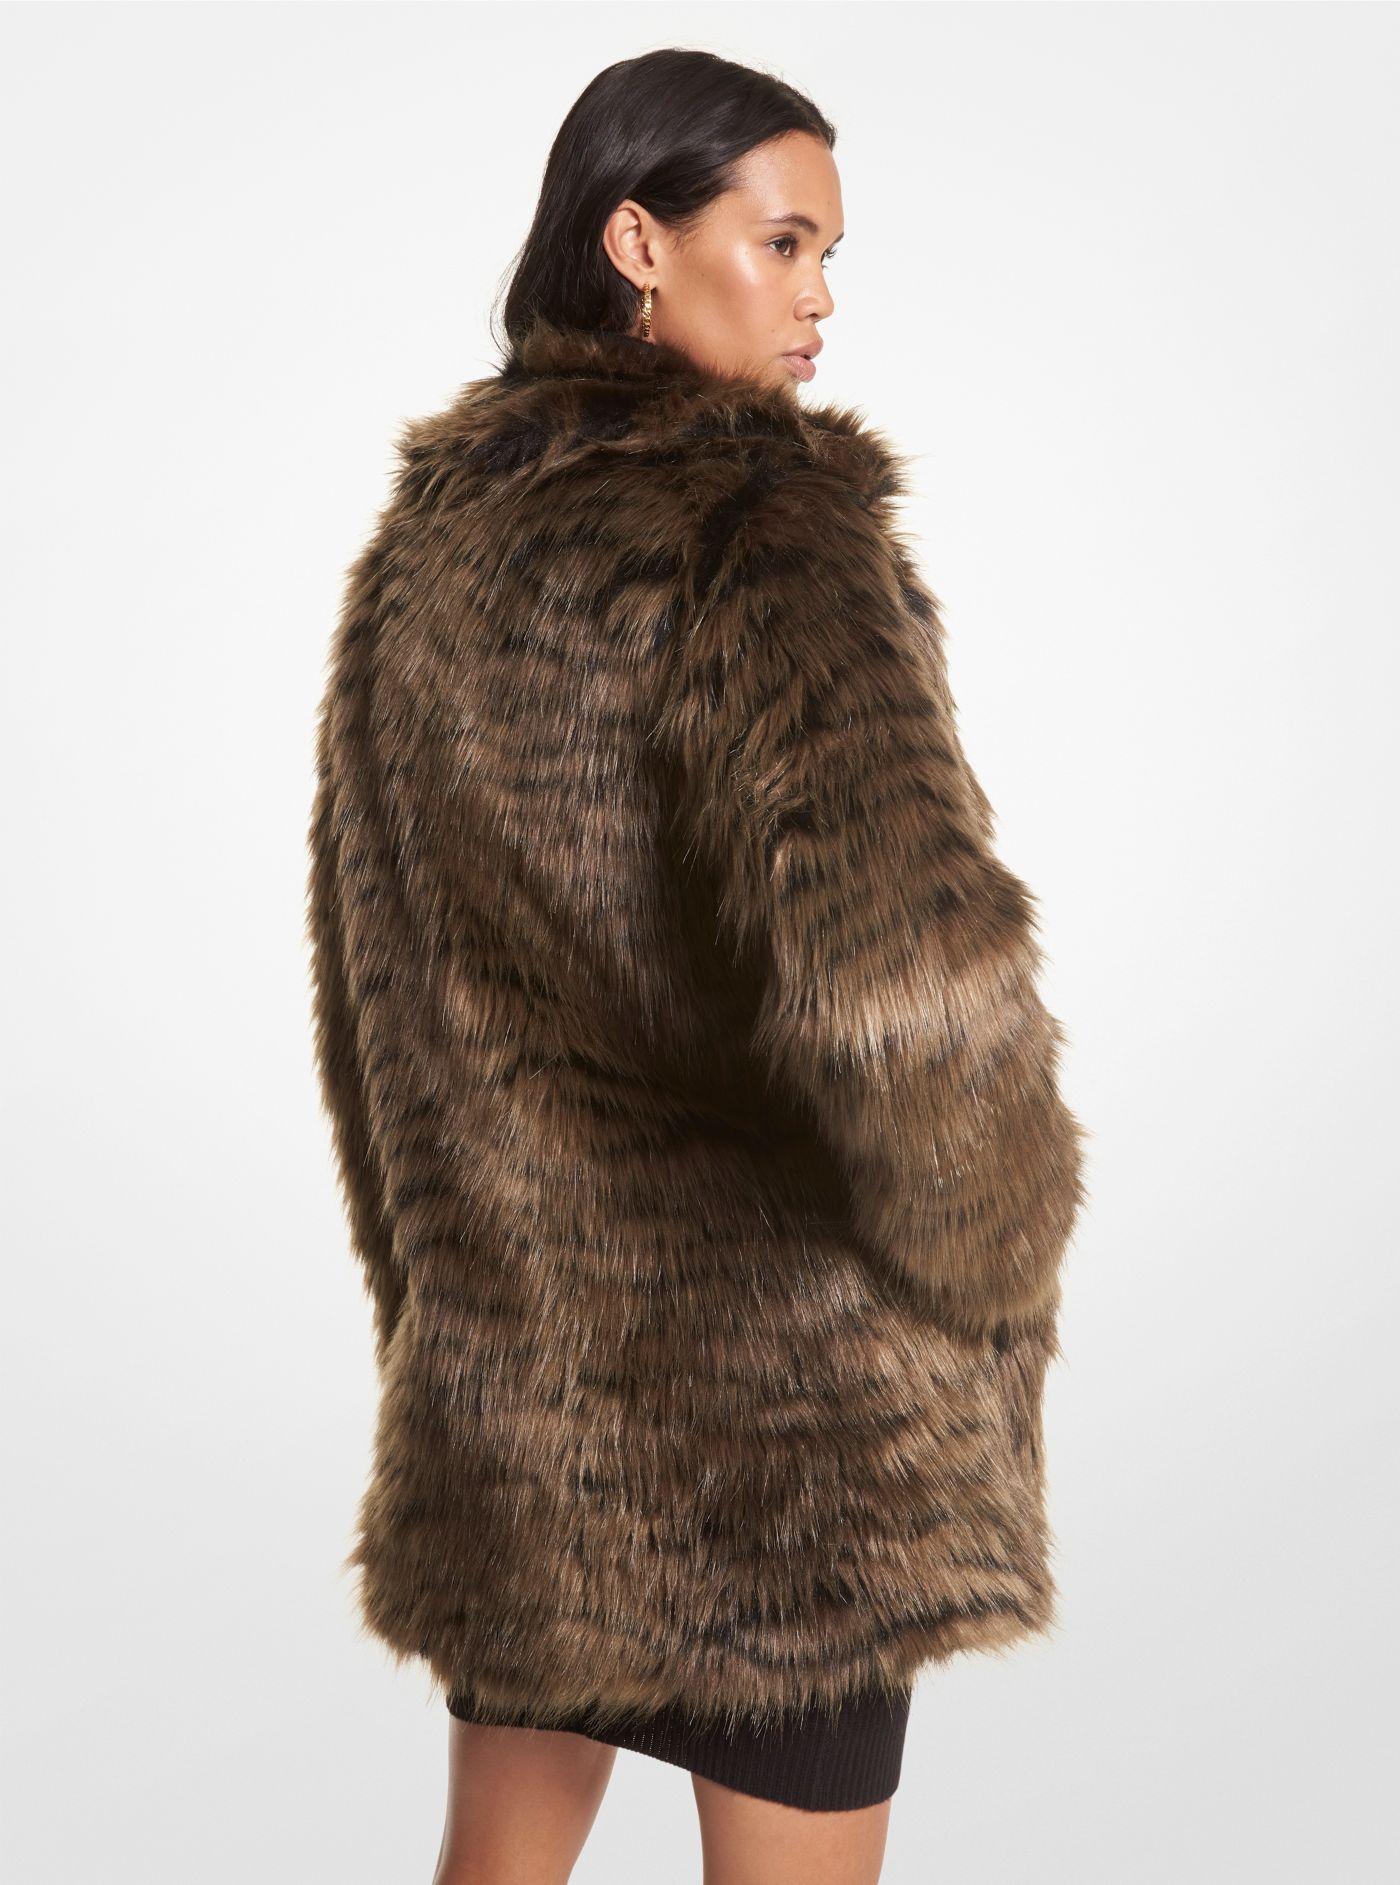 Michael Kors Tiger Print Faux Fur Coat in Brown | Lyst